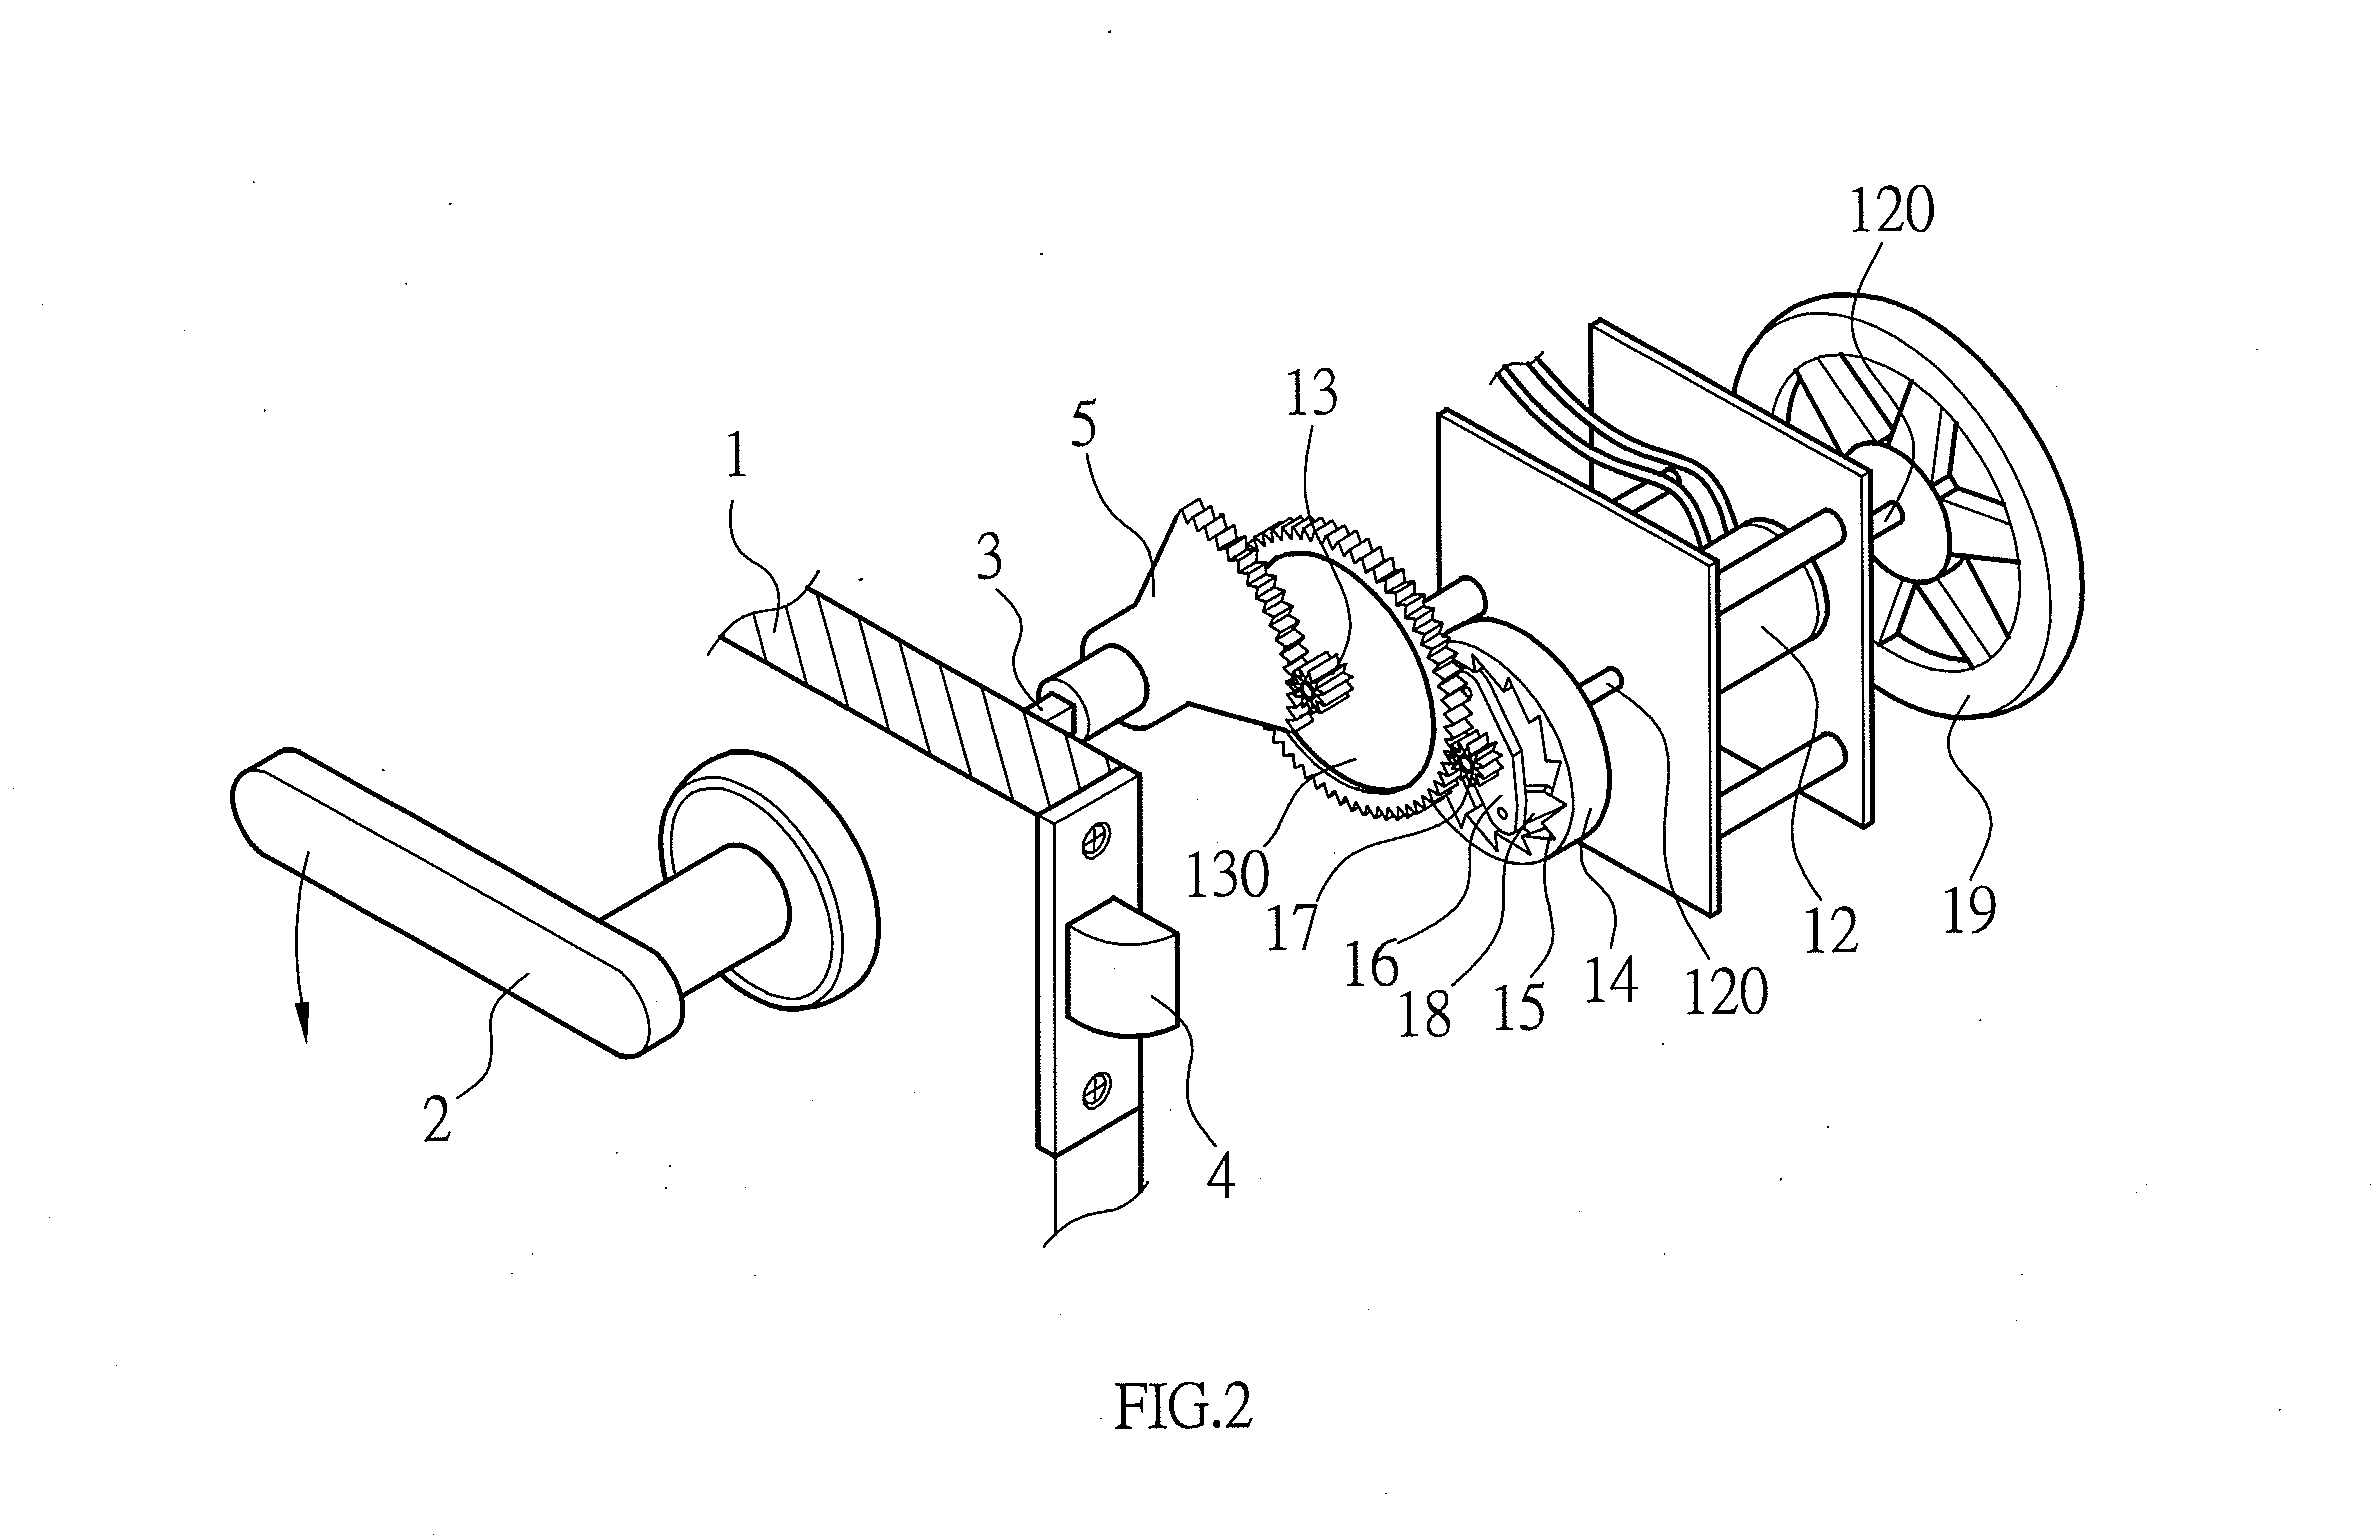 Power supply device for door handle